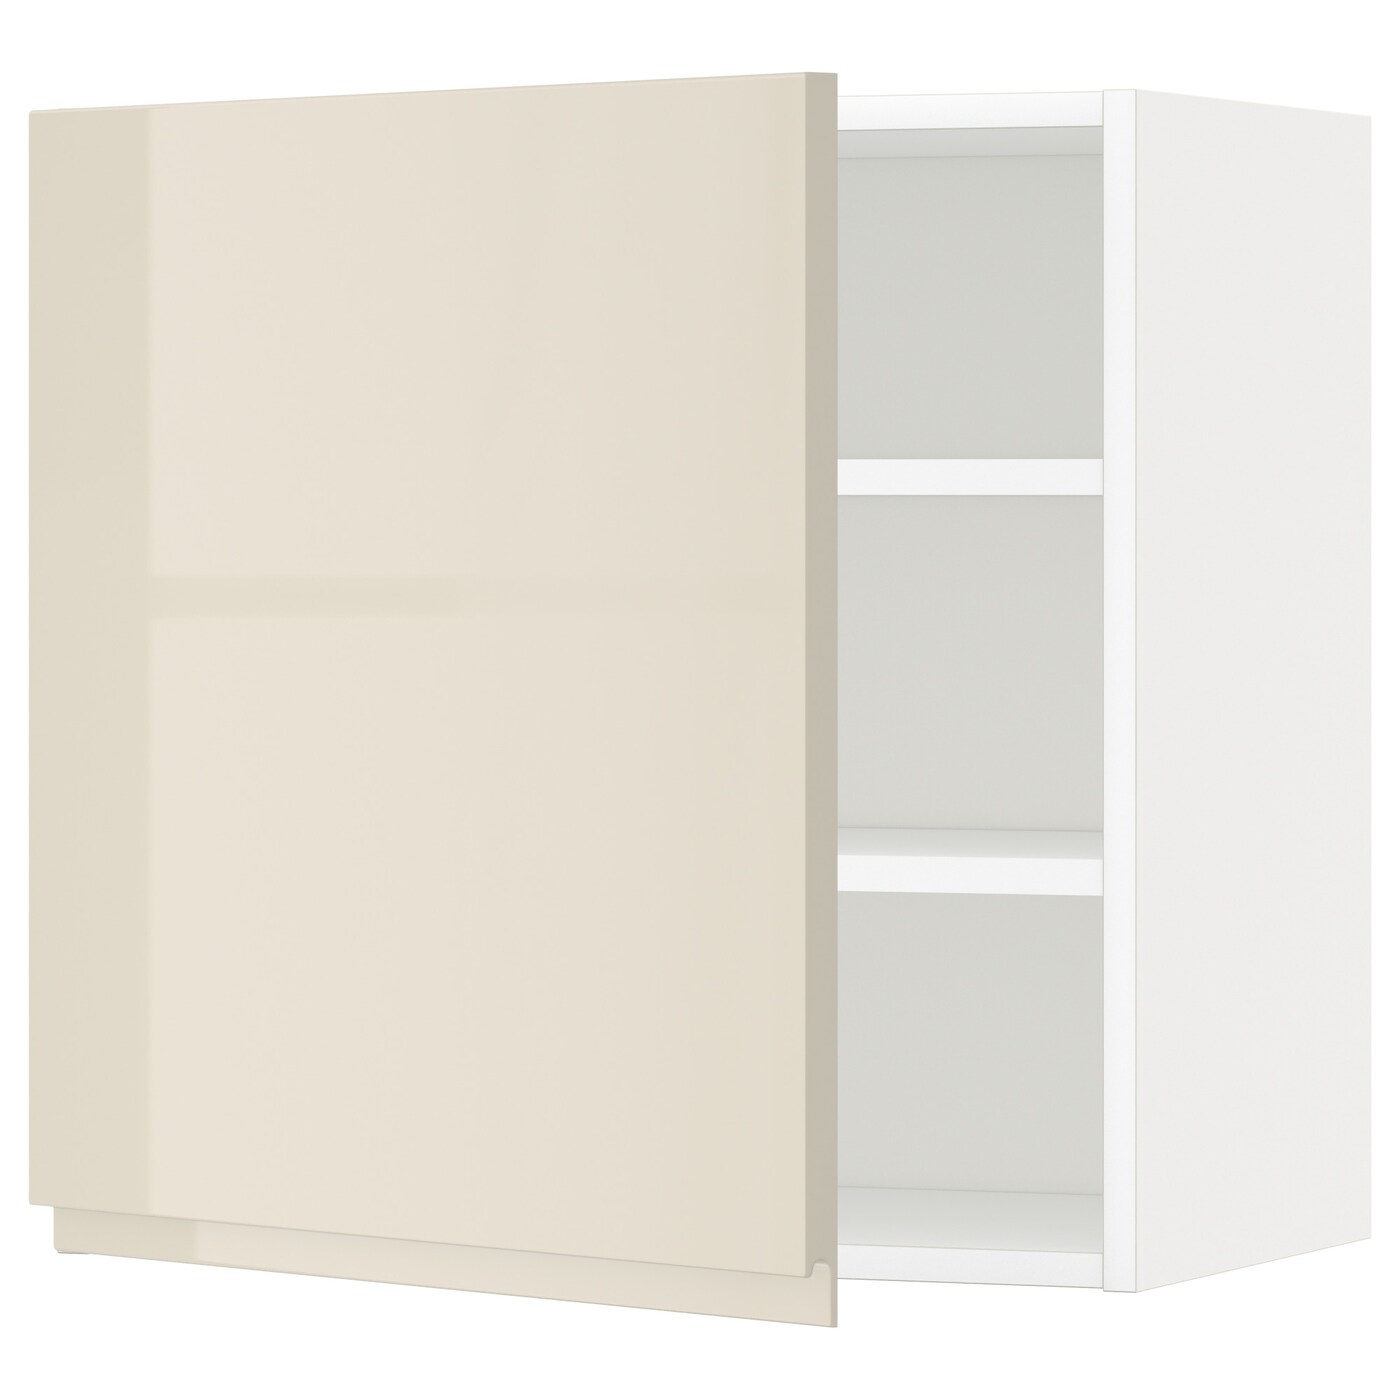 Навесной шкаф с полкой - METOD IKEA/ МЕТОД ИКЕА, 60х60  см, белый/светло-бежевый